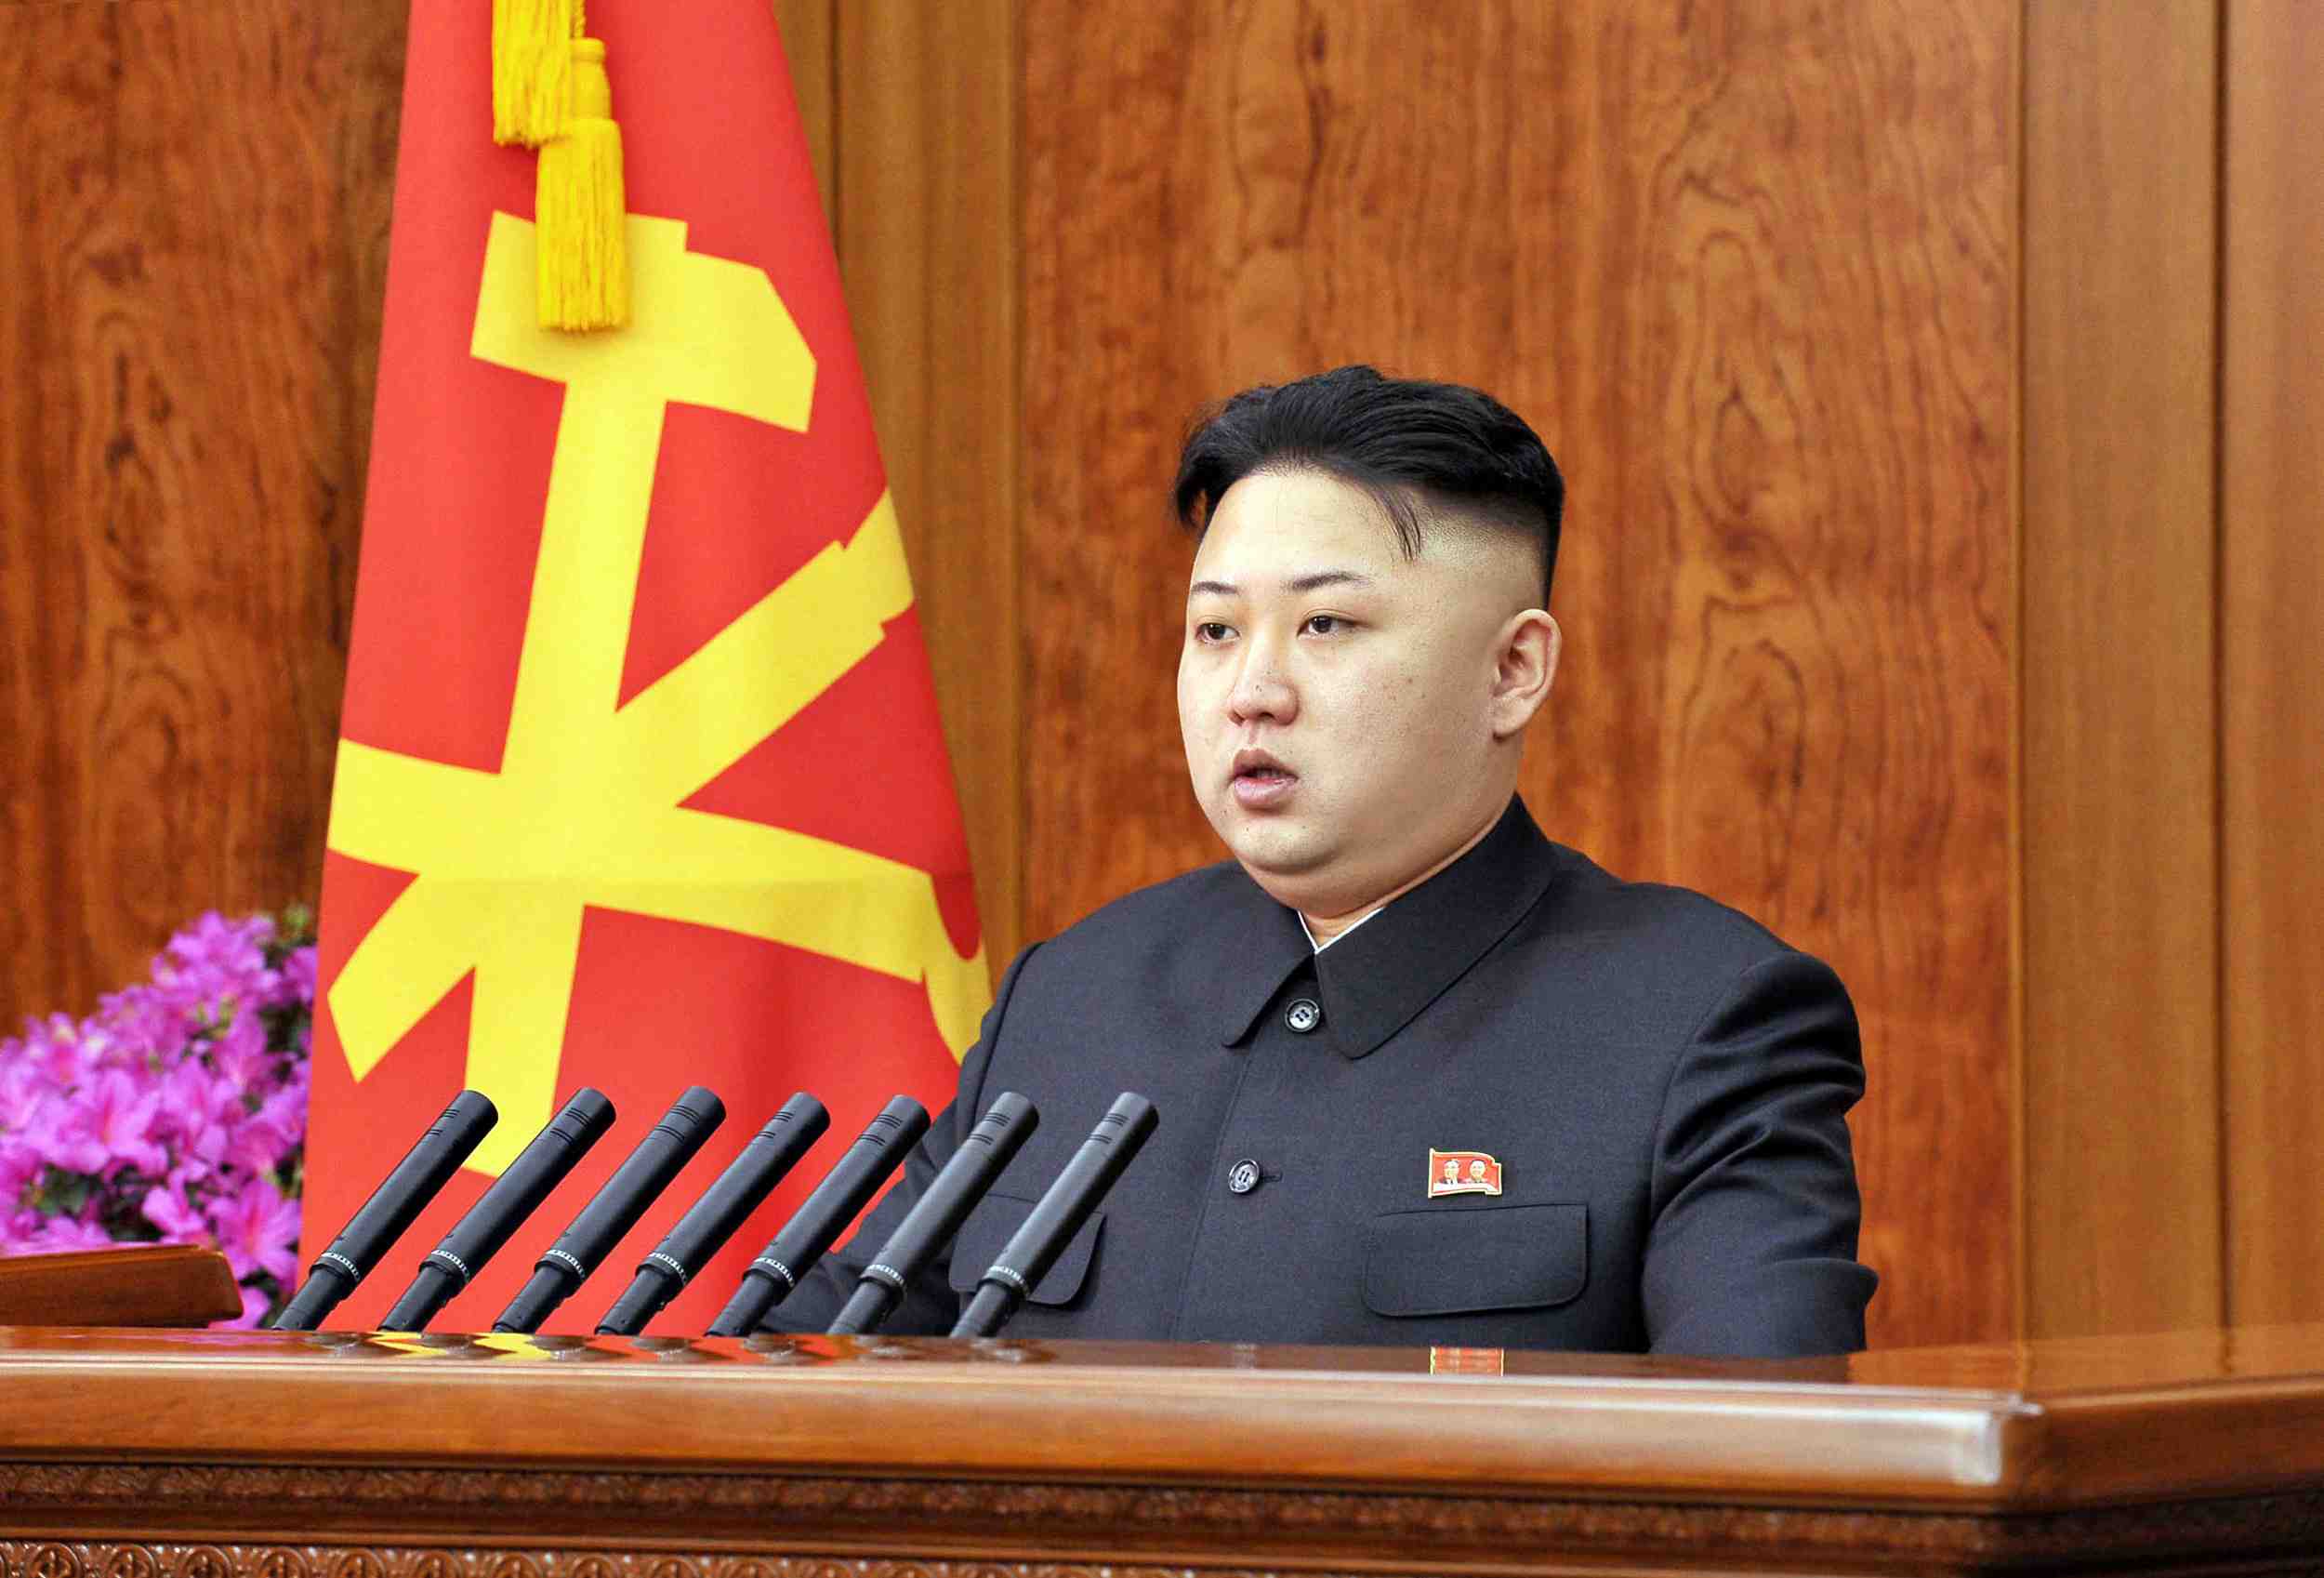 Lider Norcoreano Kim Jong-Un